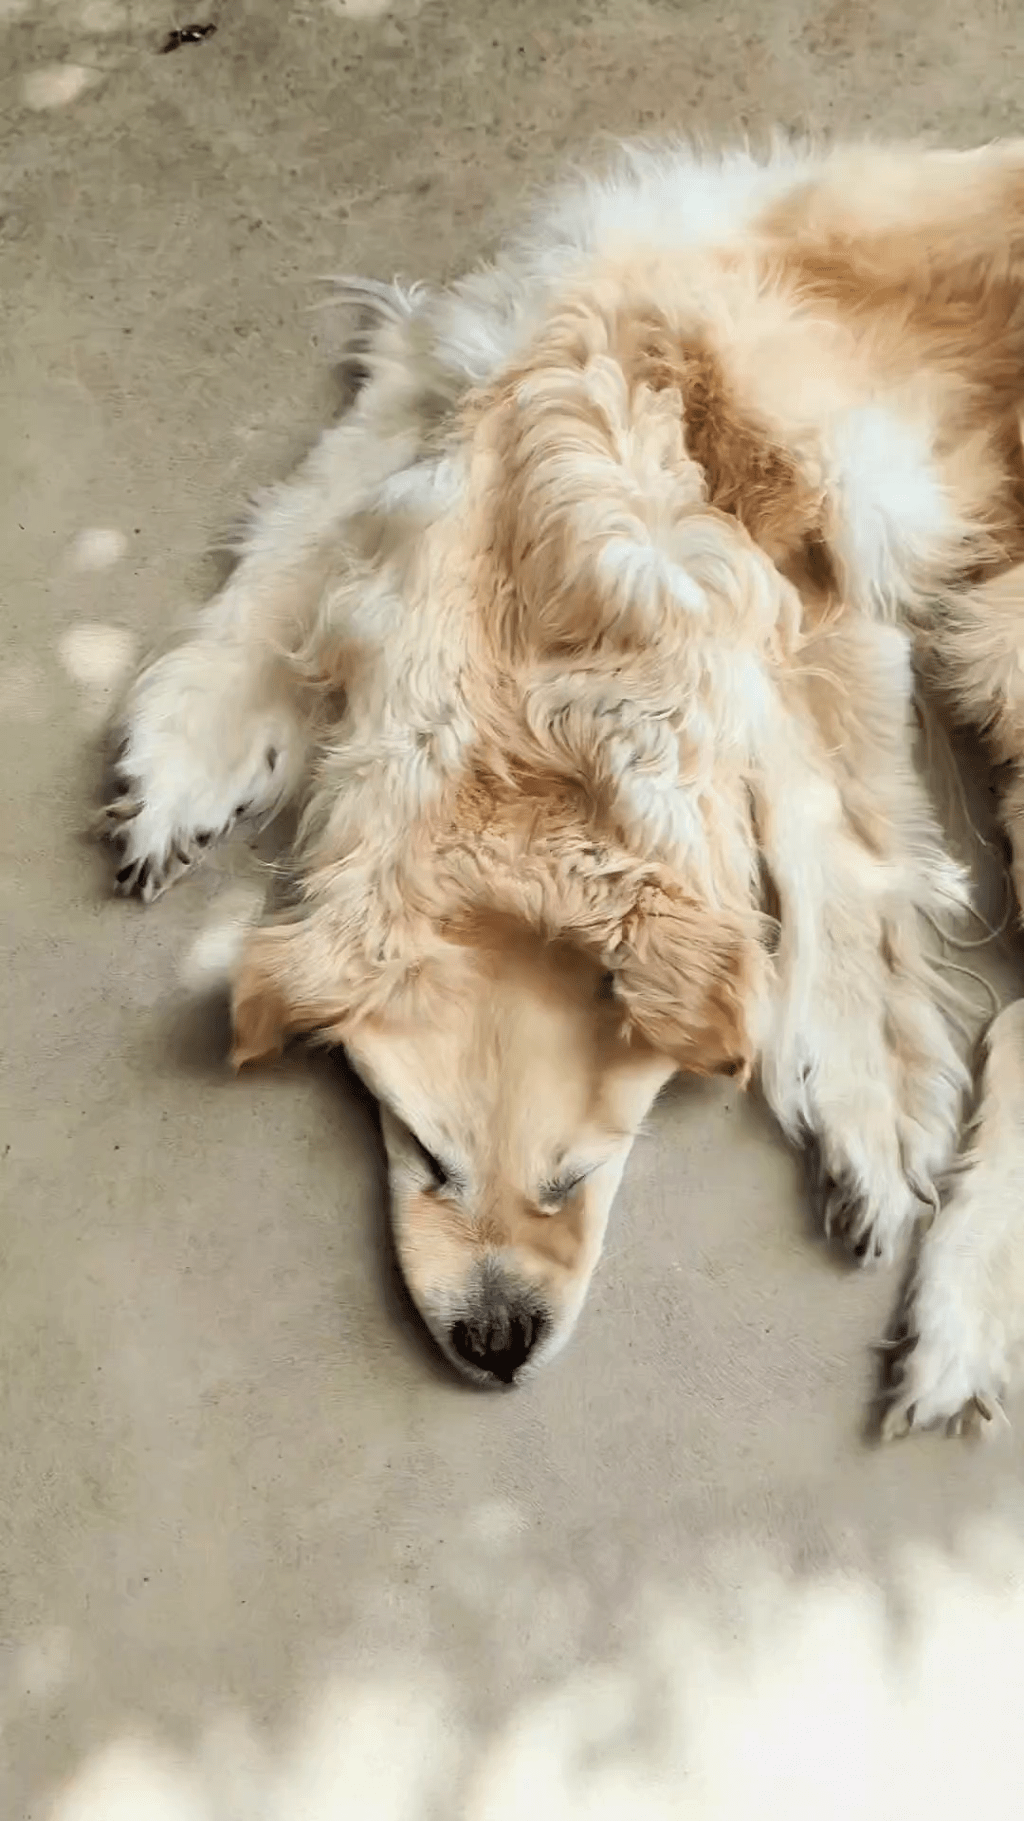 将过世爱犬做成地毯作纪念，做法不是人人接受得了。